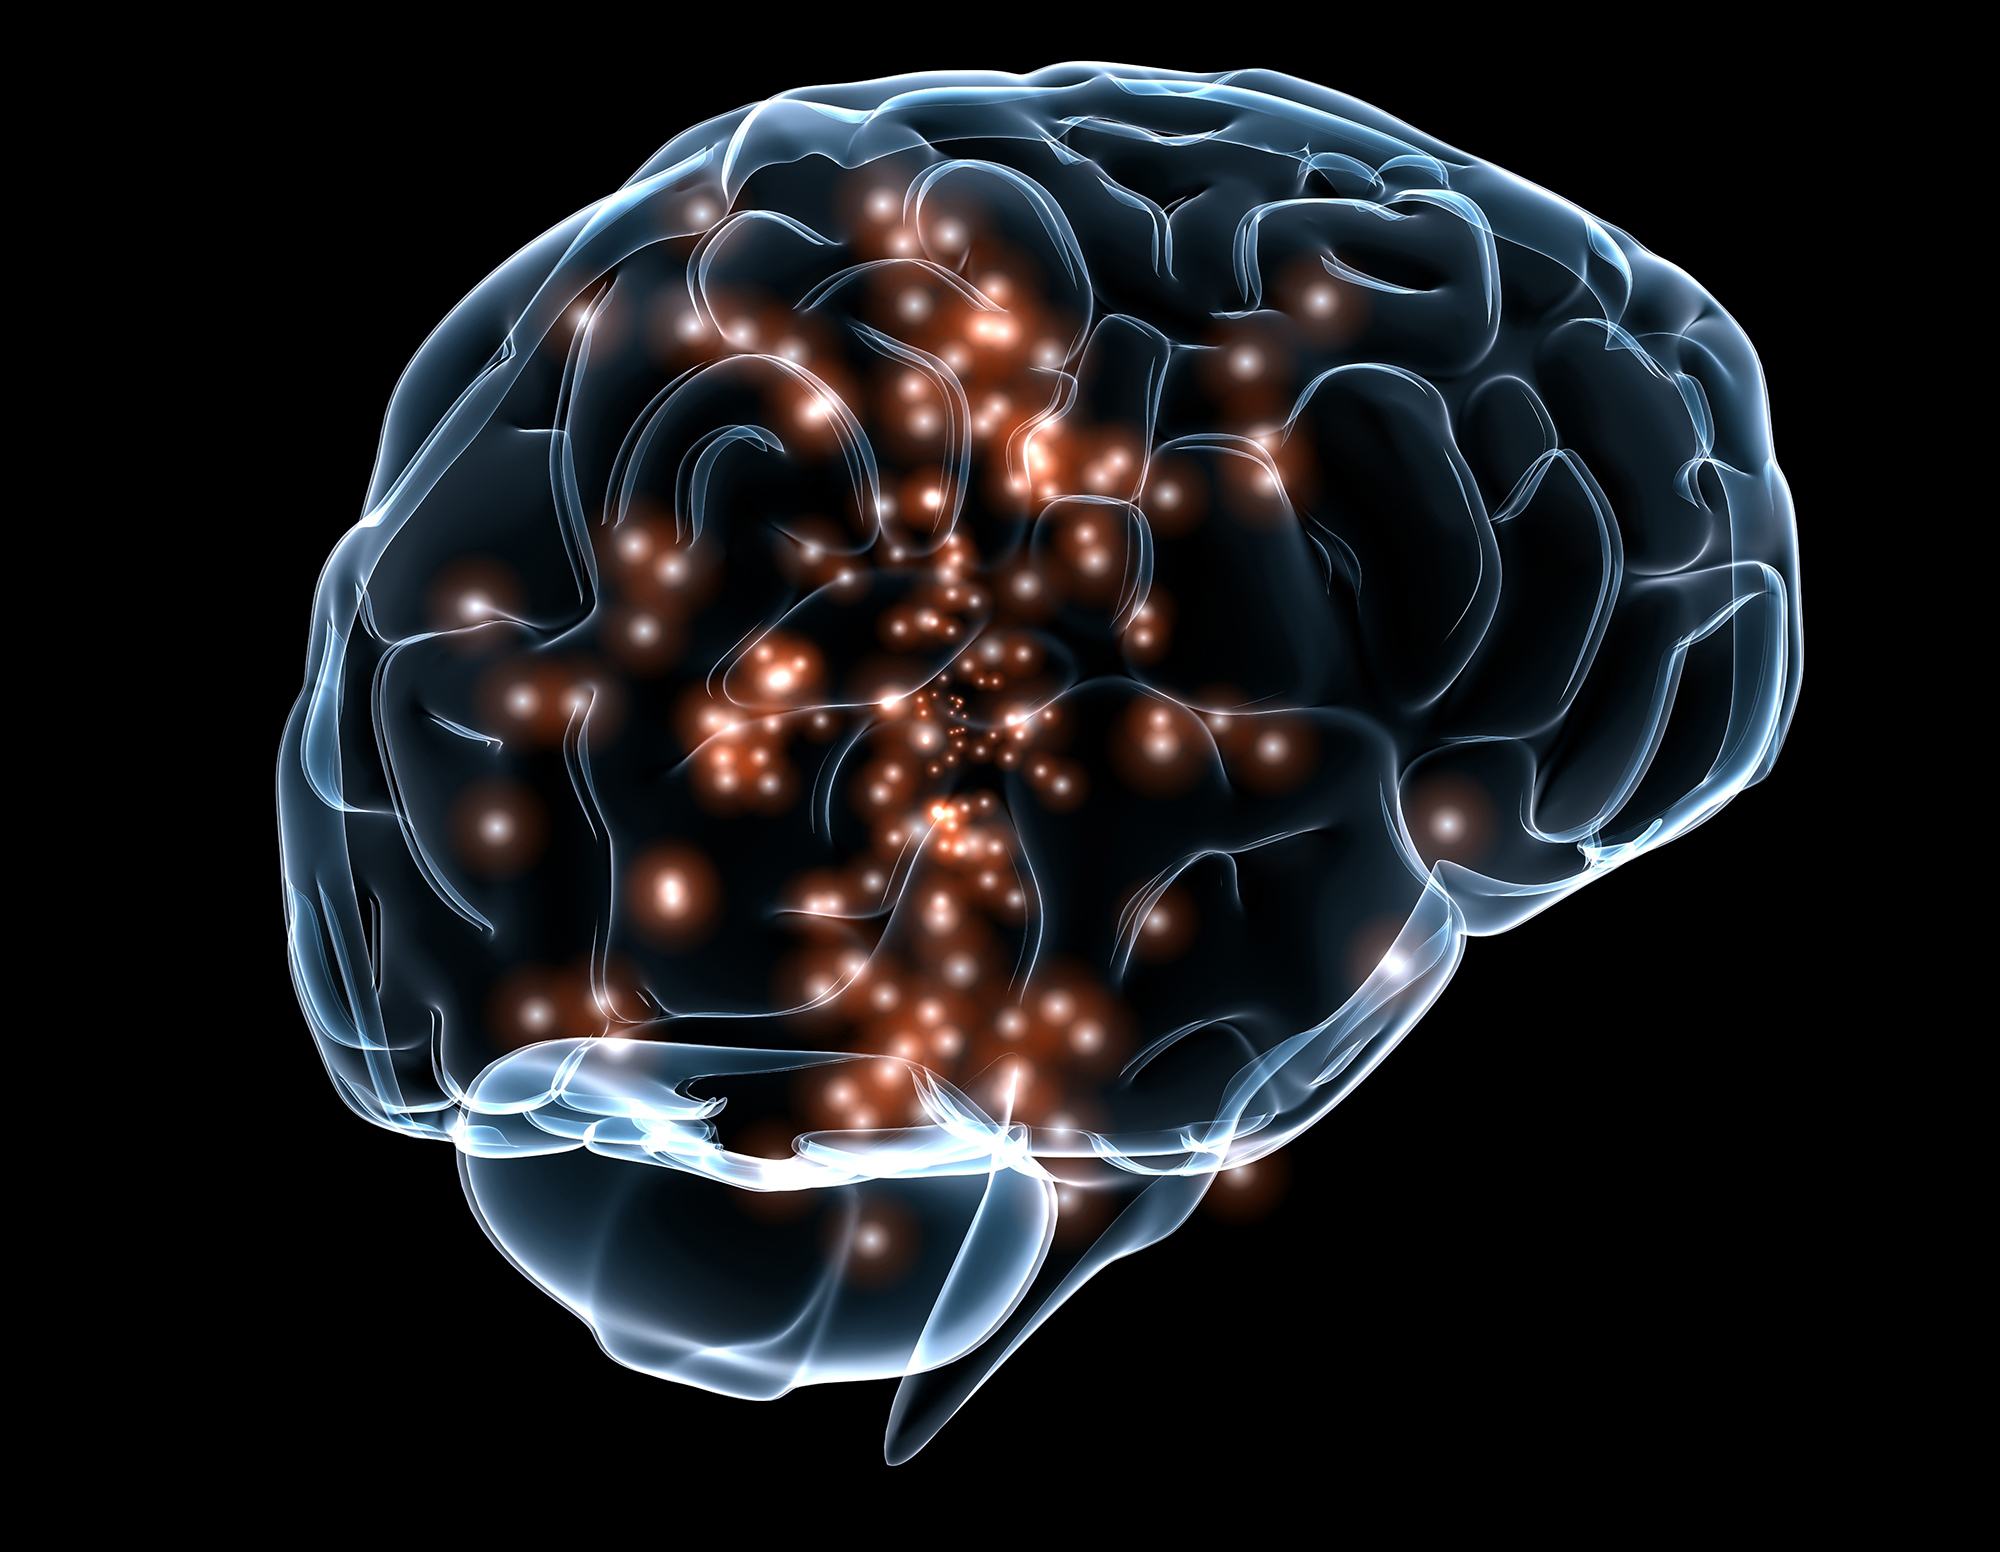 Διέγερση εγκεφάλου με μαγνητικά πεδία “κλειδί” για νευρολογικές παθήσεις